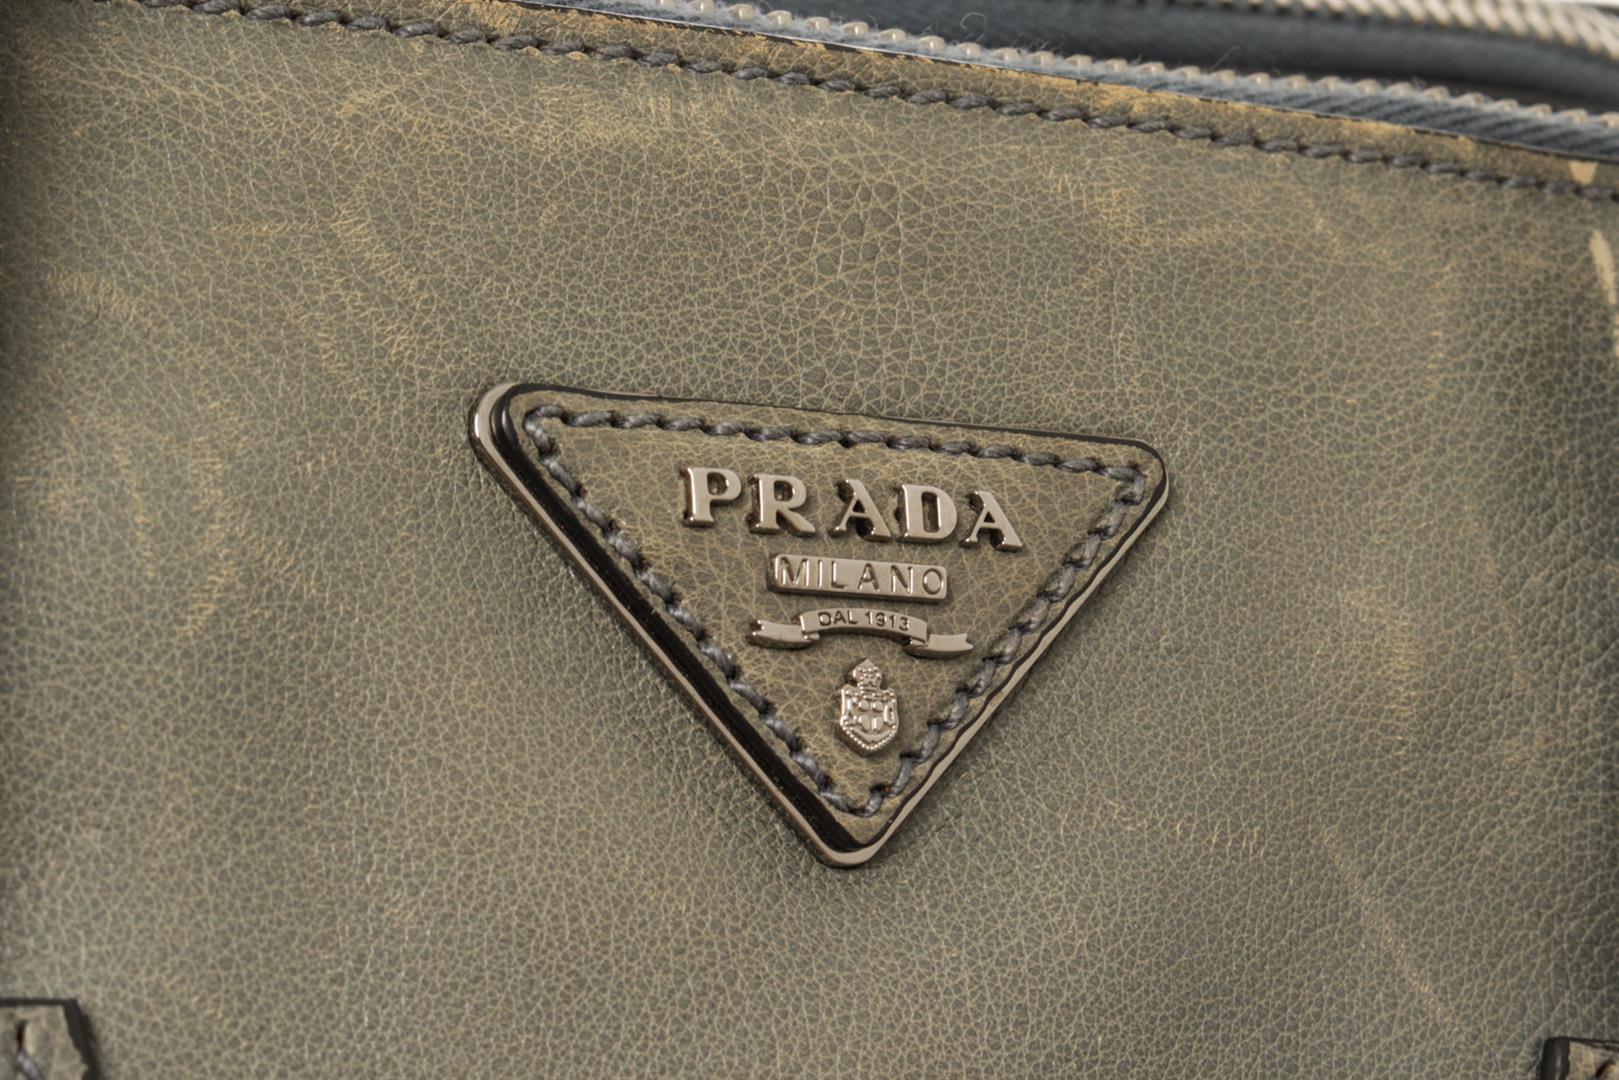 Prada Grey Leather 2way Tote Bag